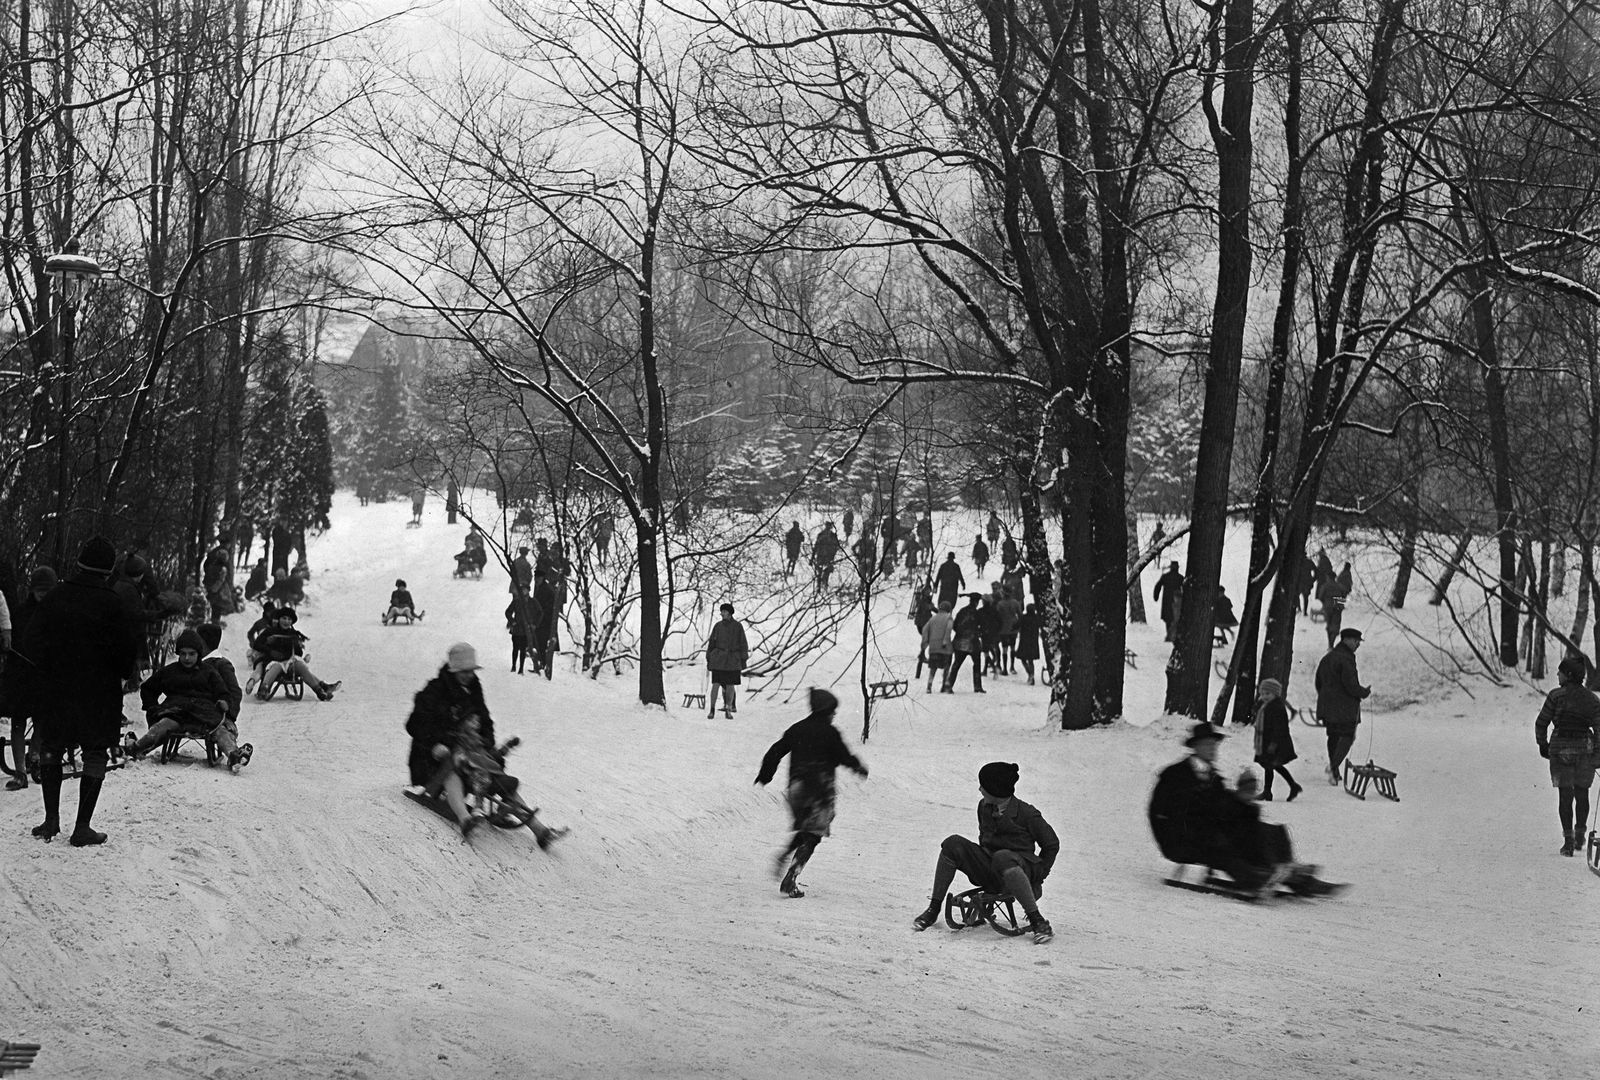 Wintersport im Stadtpark Berlin Steglitz: Eltern und Kinder beim Rodeln, 1929 © bpk / Kunstbibliothek, SMB / Willy Römer